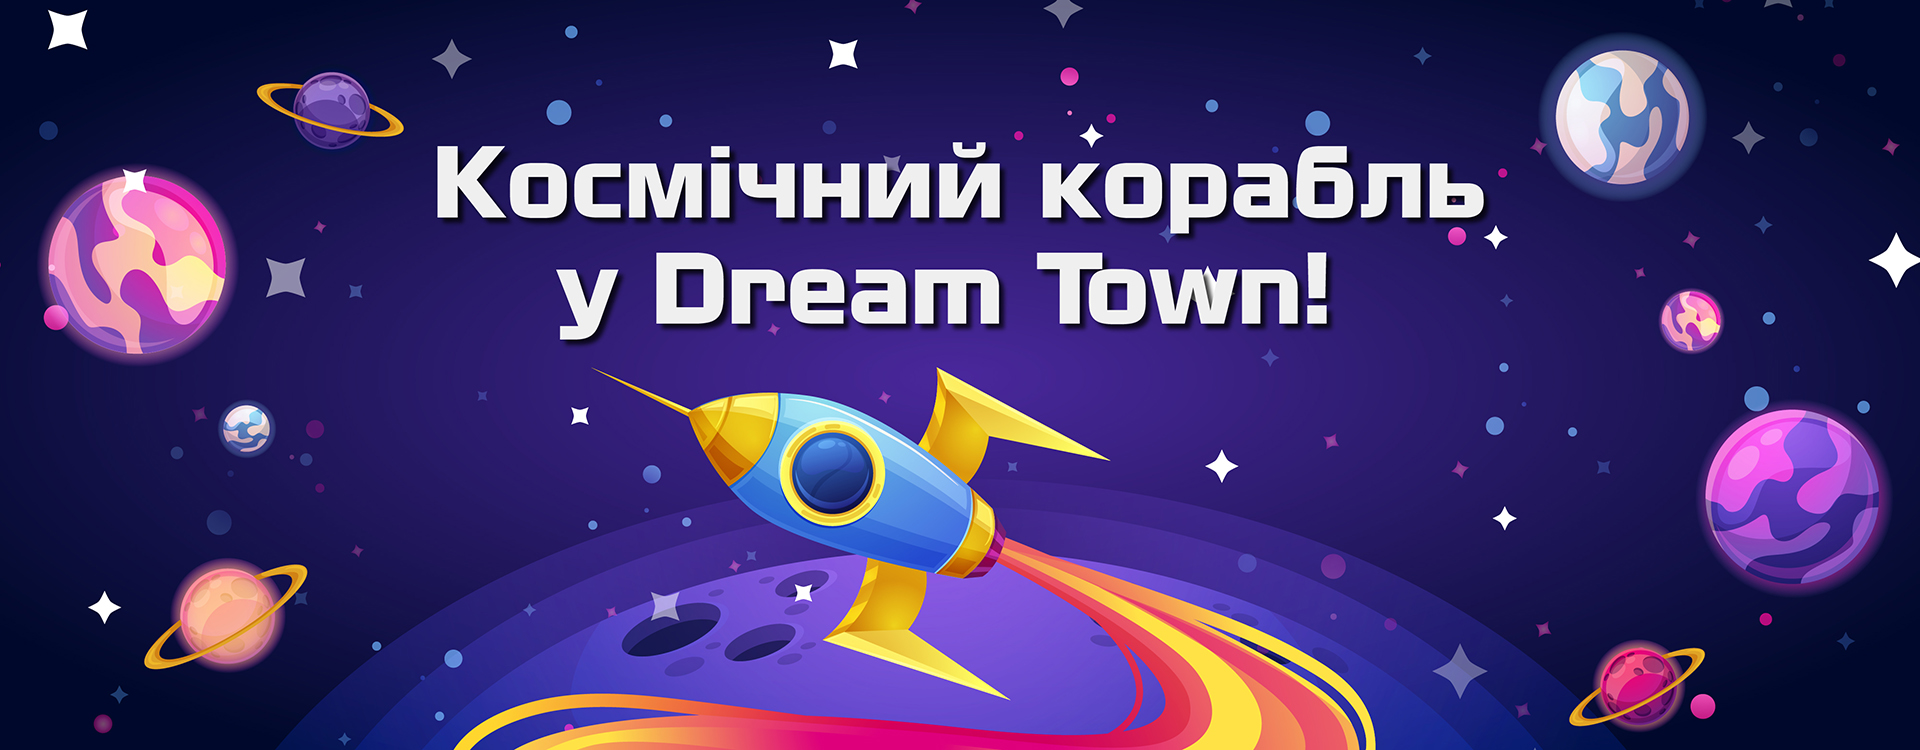 Космічний корабль у Dream Town!